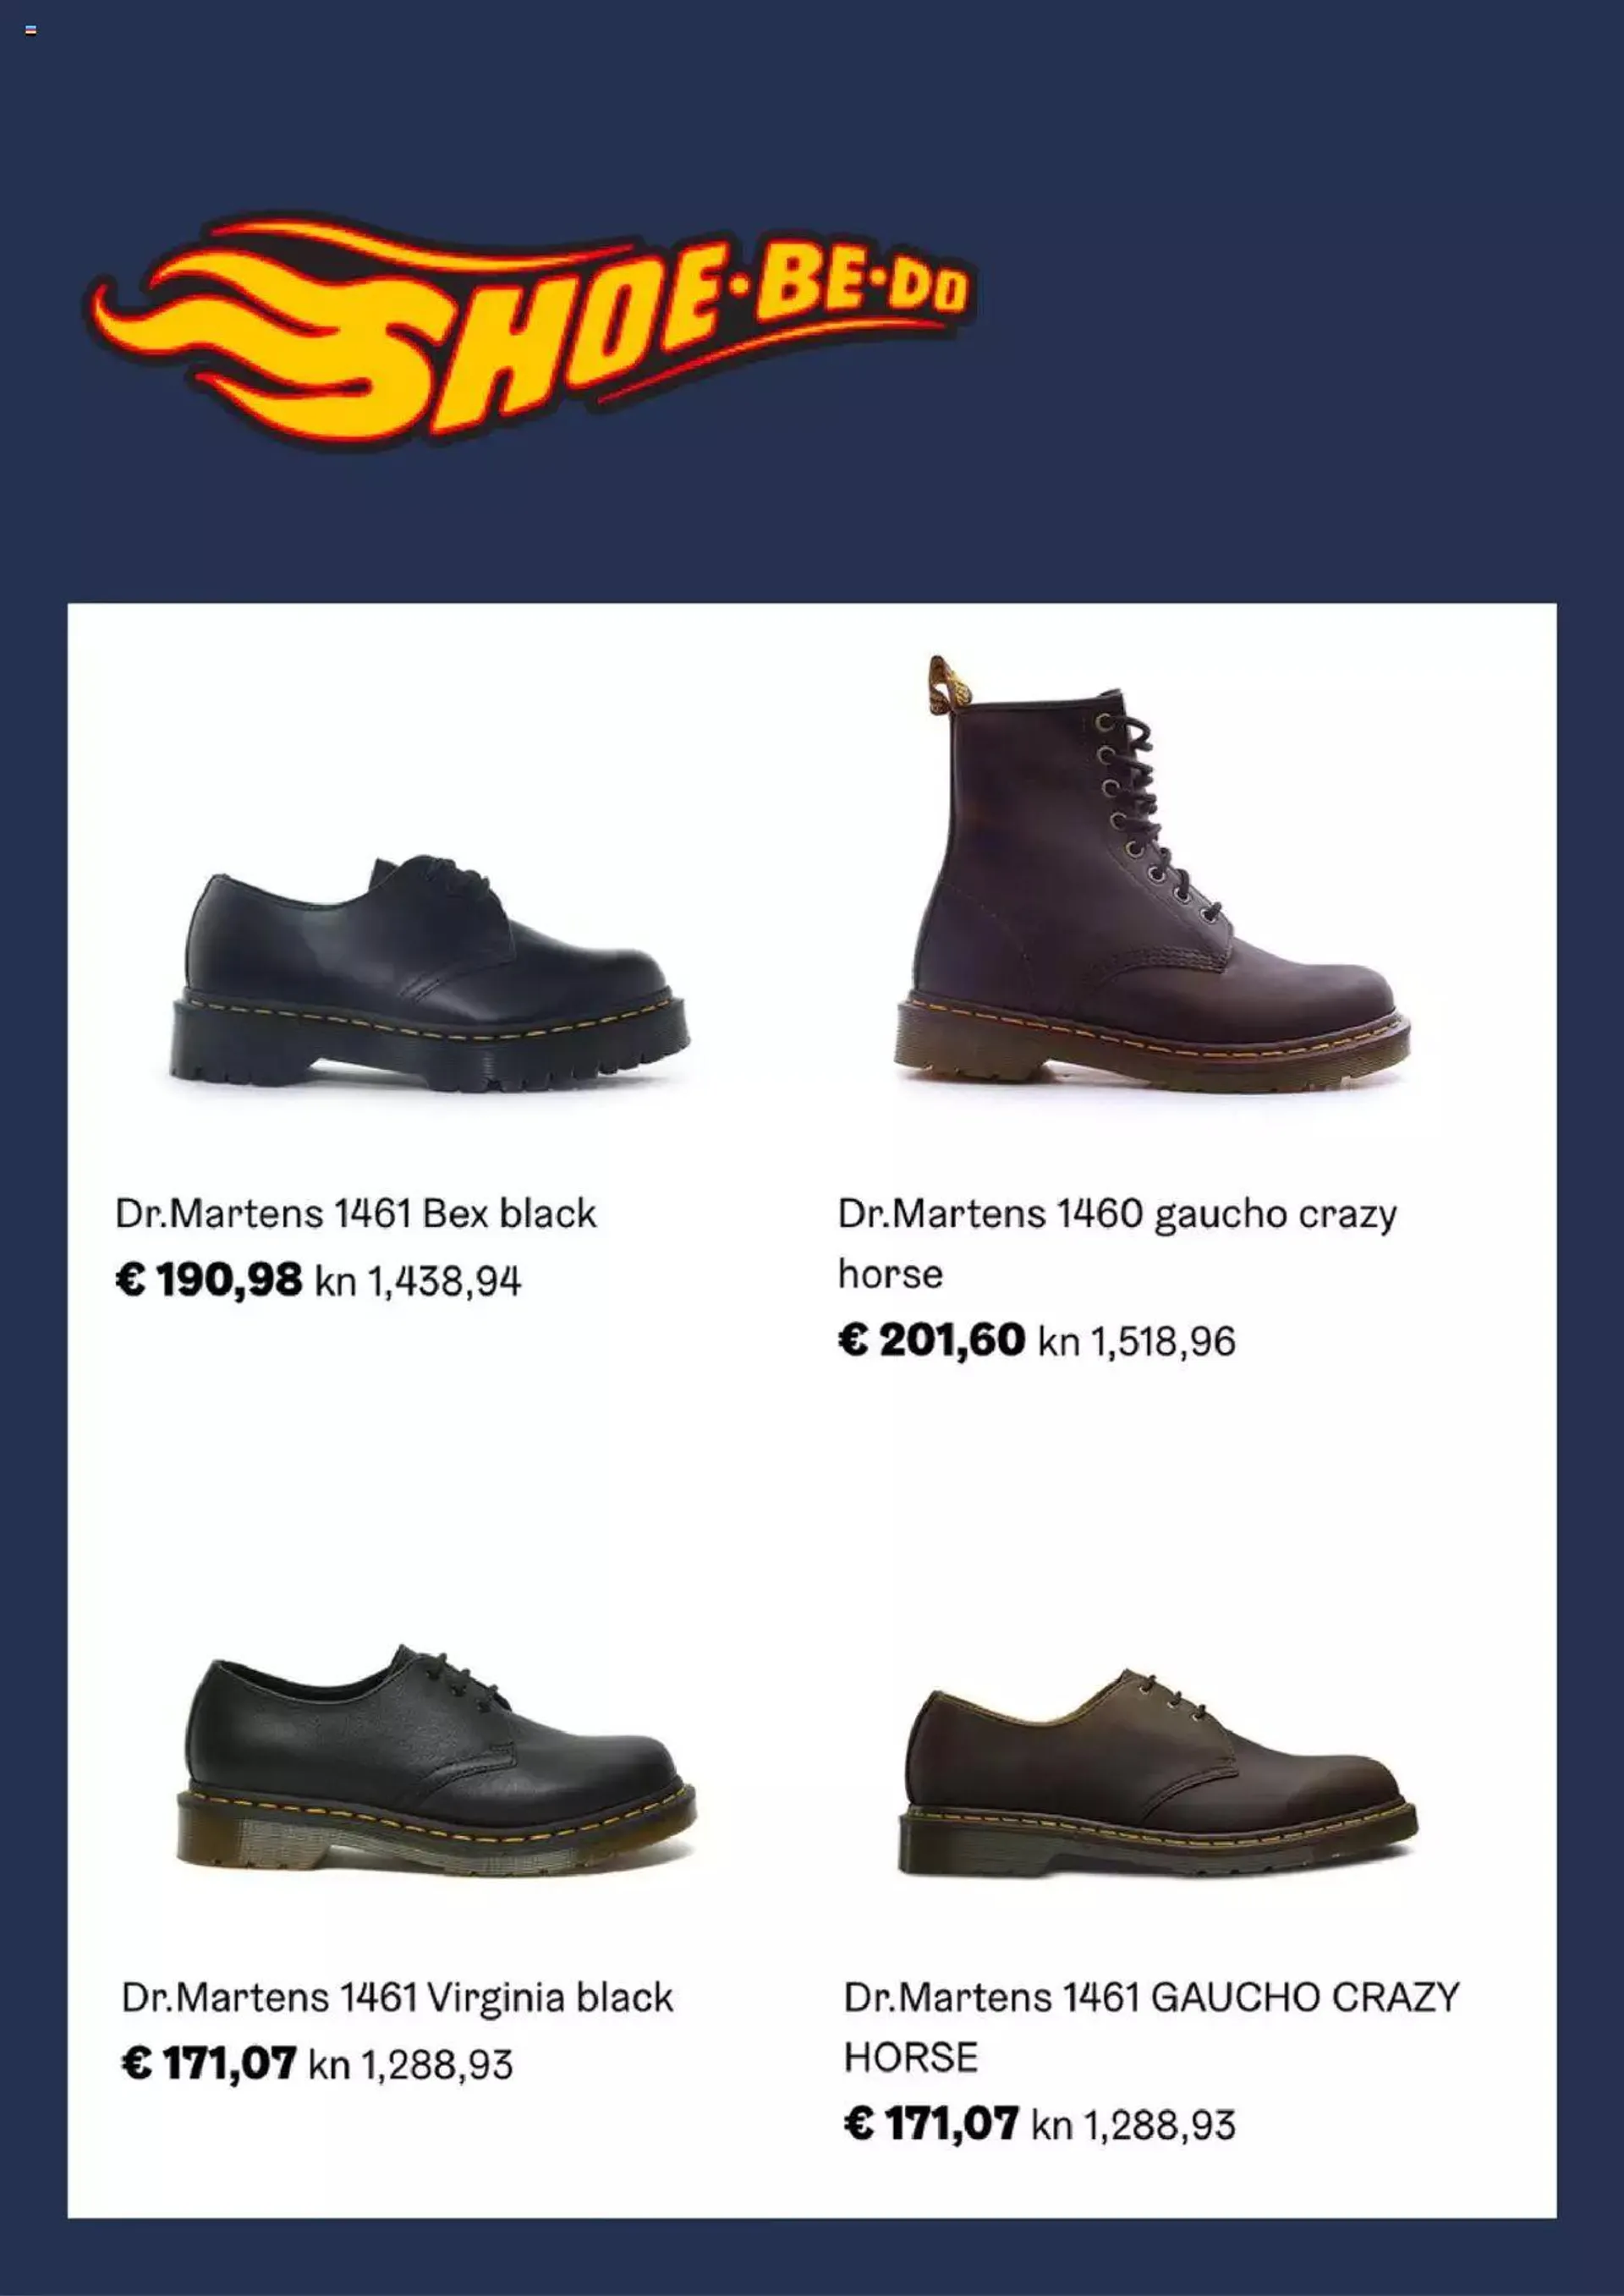 Katalog Shoebedo - 1